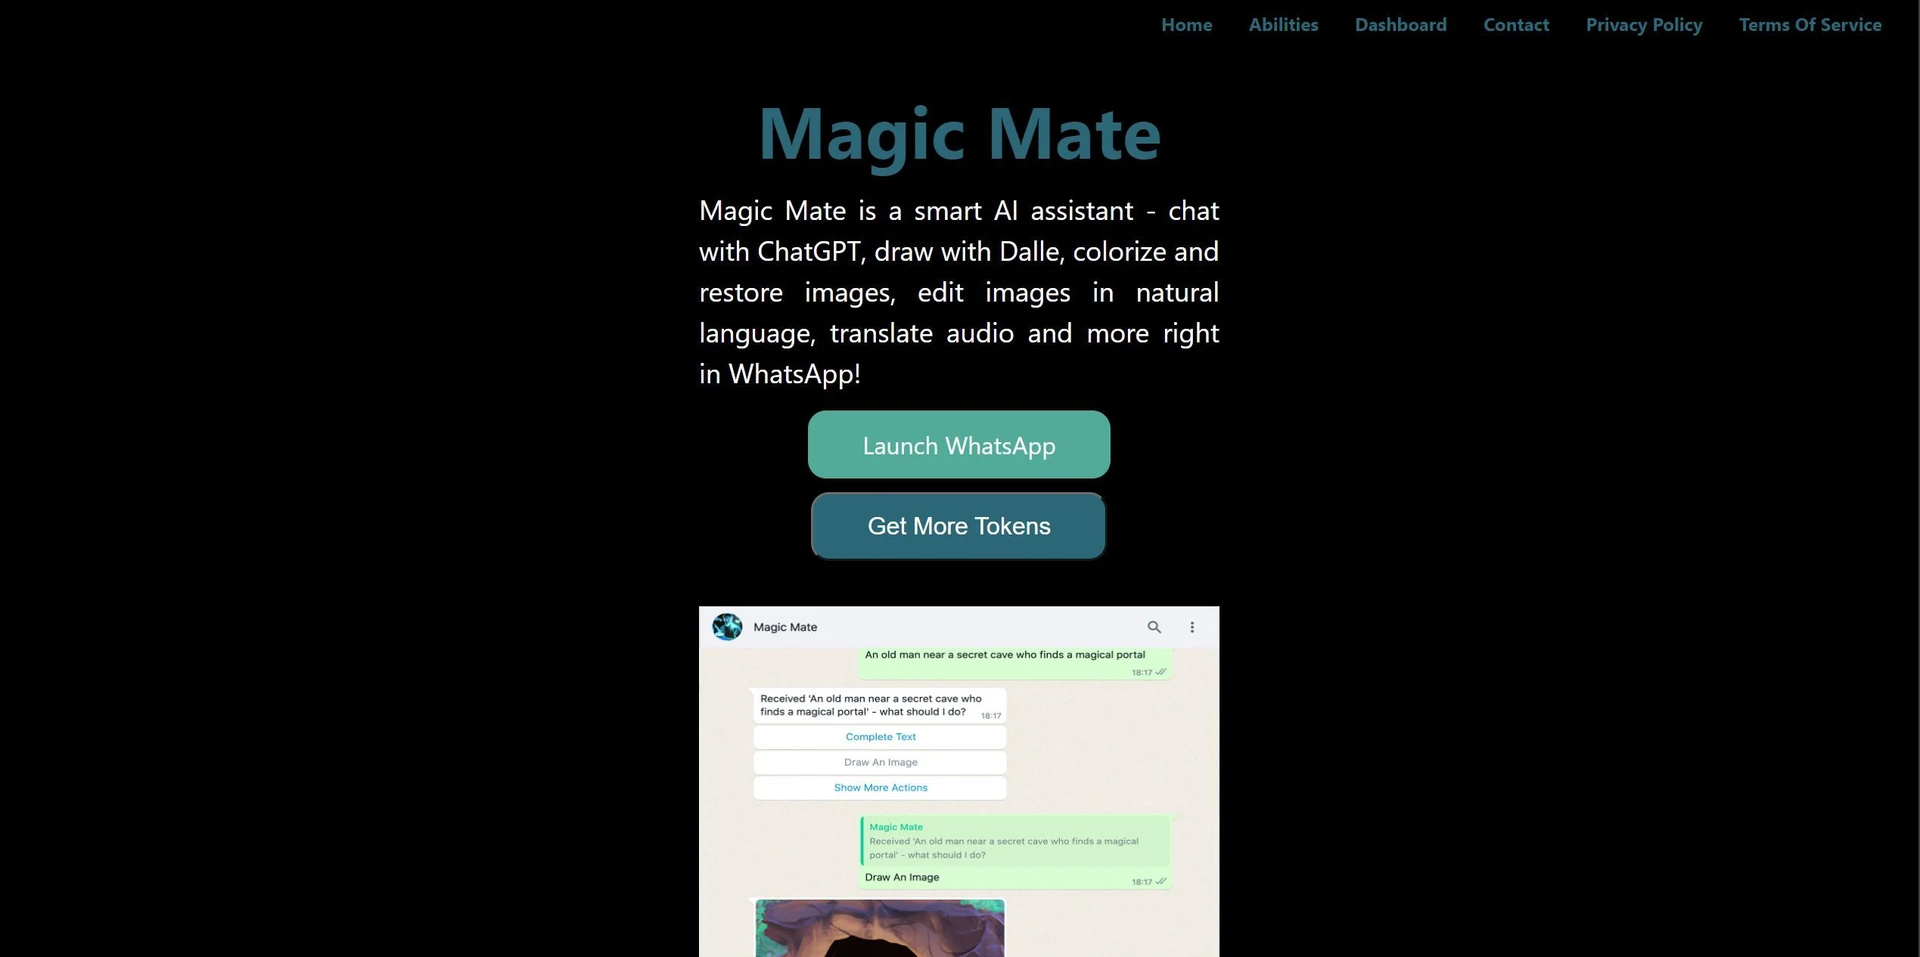 Magicmatewebsite picture